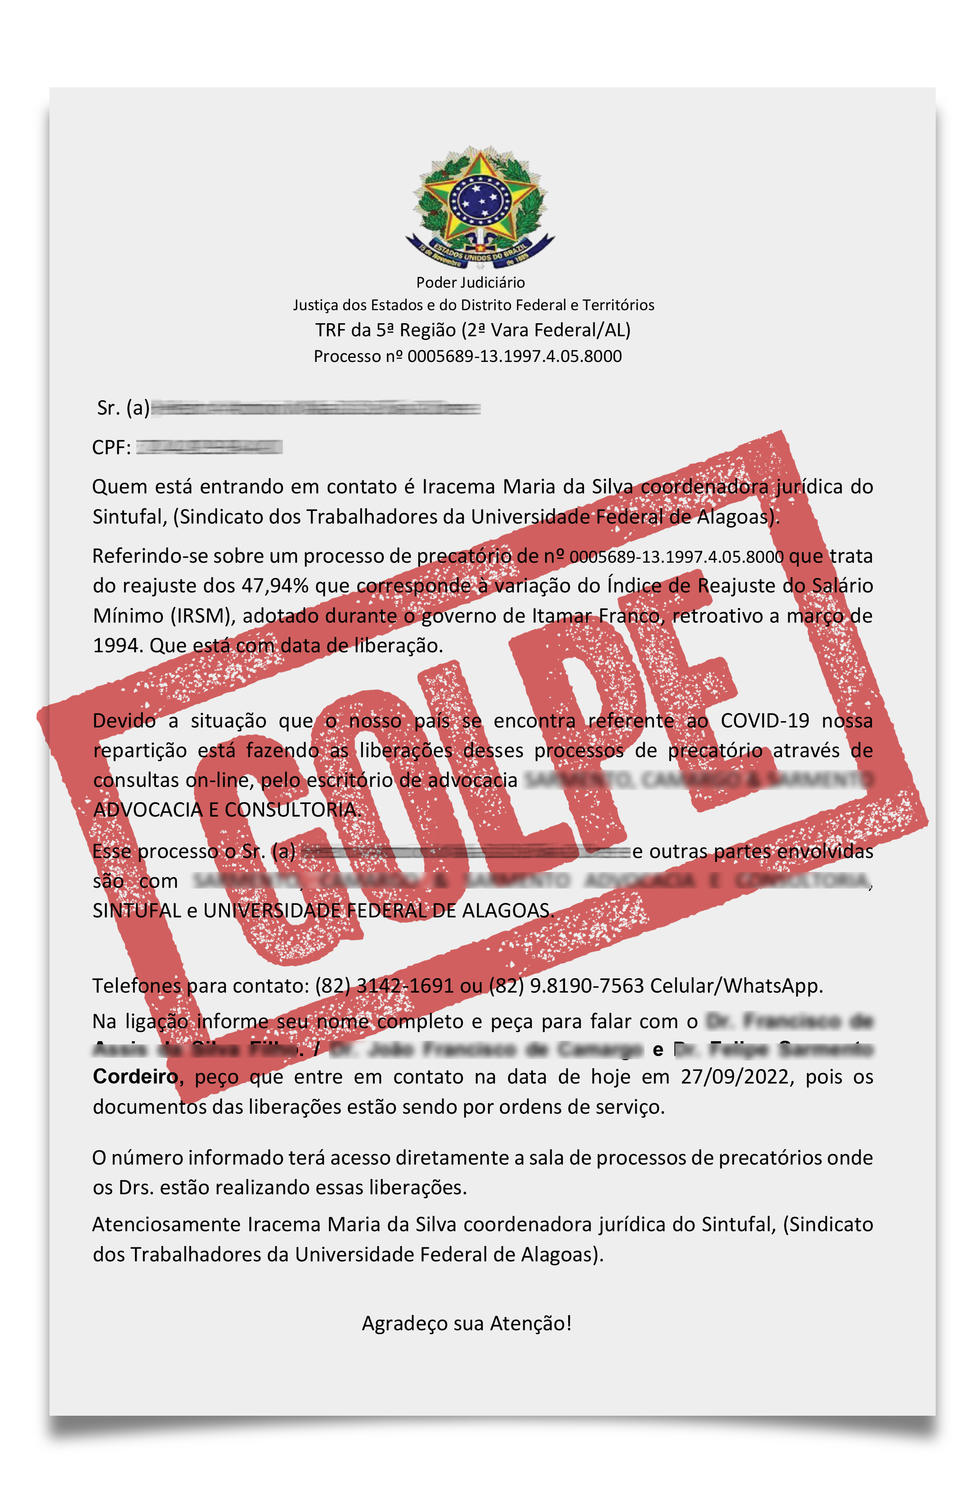 Documento enviado por golpistas utiliza nome da Coordenadora Jurídica do Sintufal e de advogados ligados ao processo, informando a falsa existência de precatório a ser pago em nome do filiado/a.